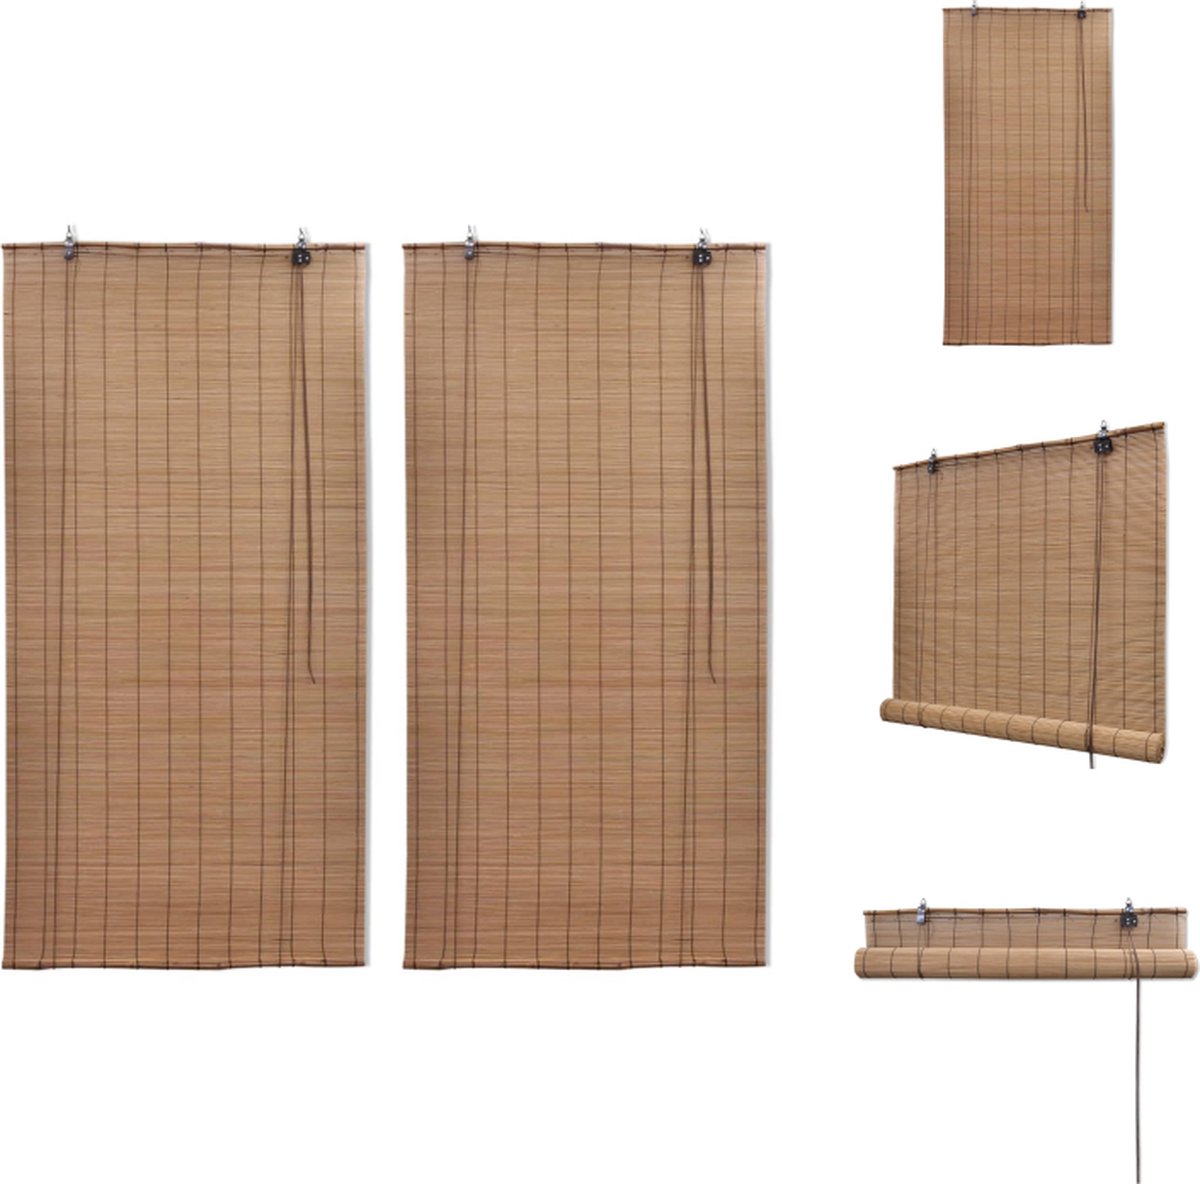 VidaXL Bamboe Rolgordijn 120 x 220 cm Filtert licht Makkelijk te reinigen Jaloezie